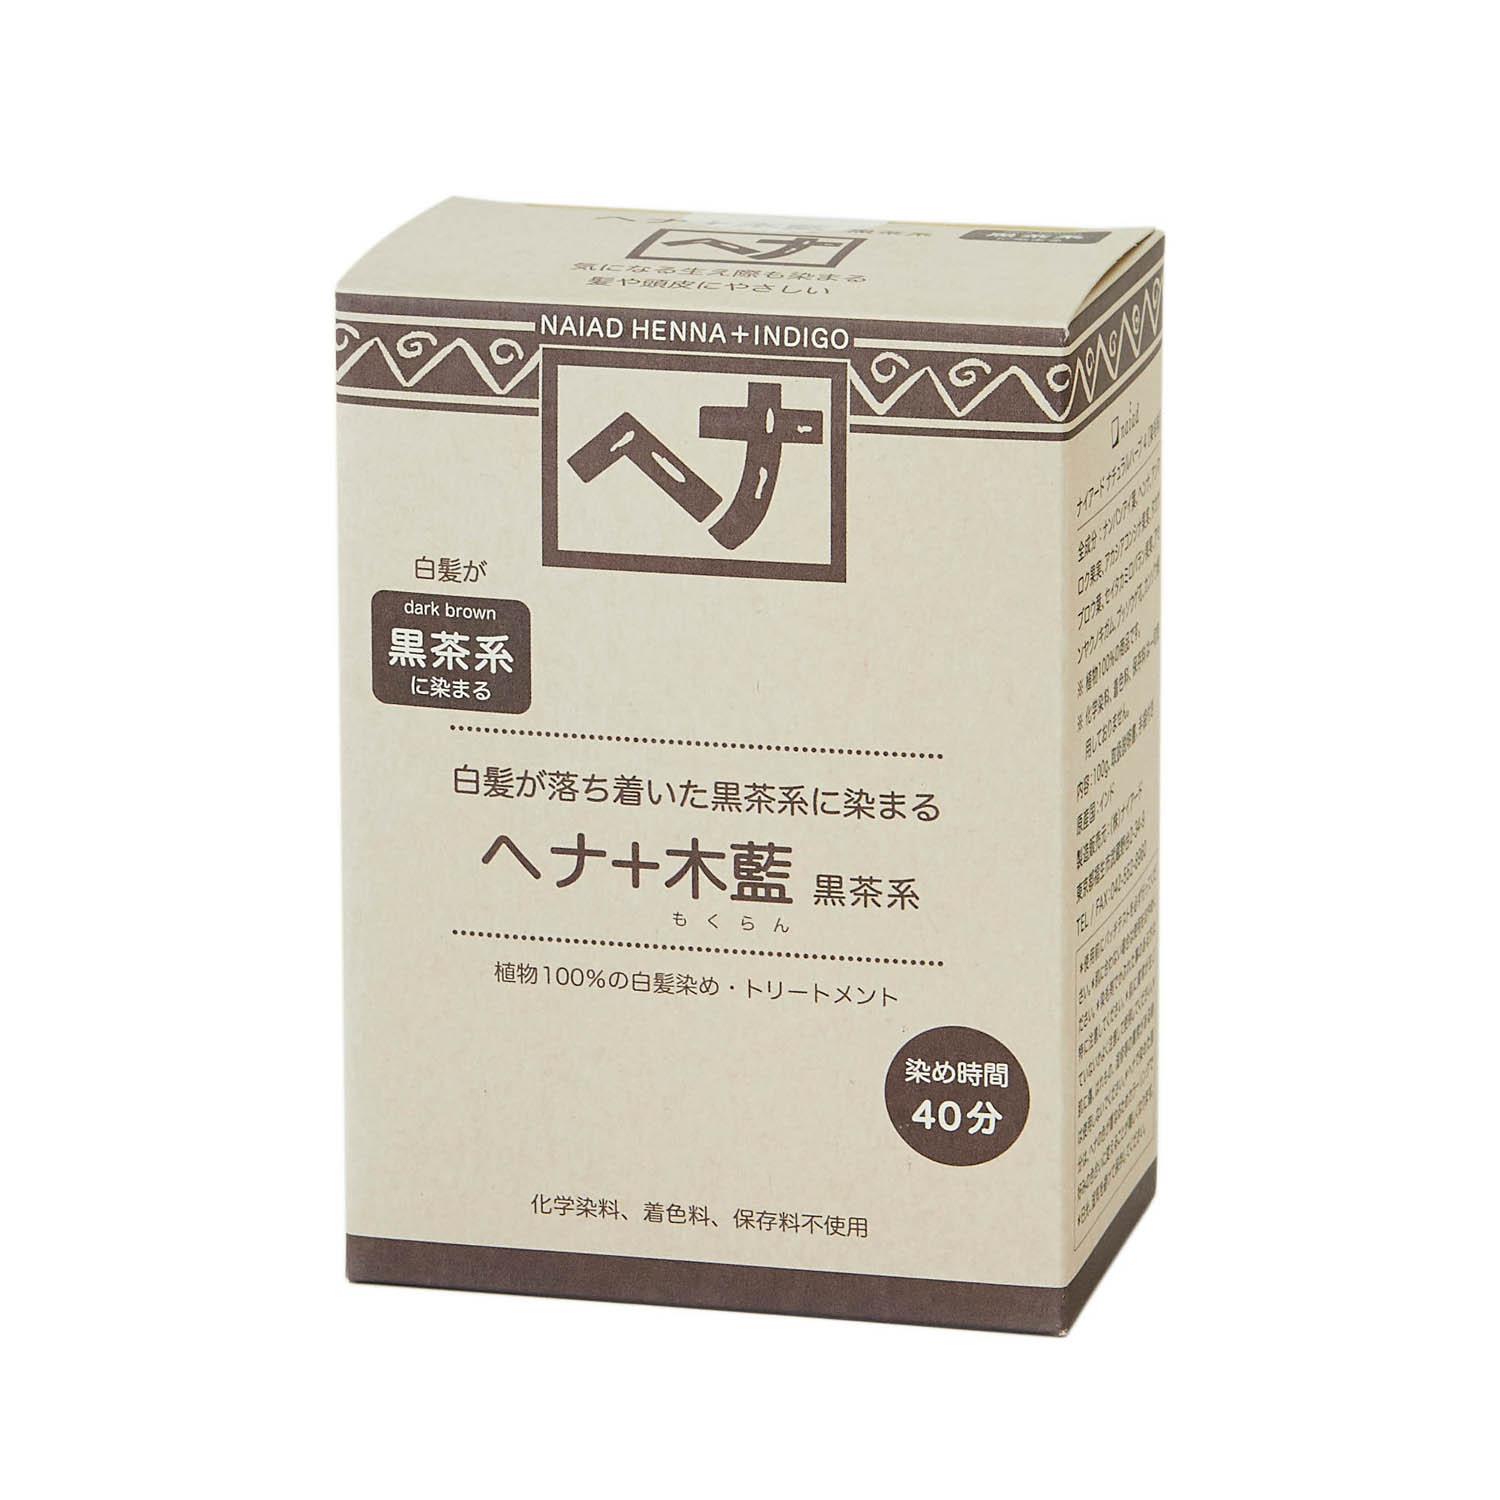 naiad/ヘナ＋木藍 100g 黒茶系